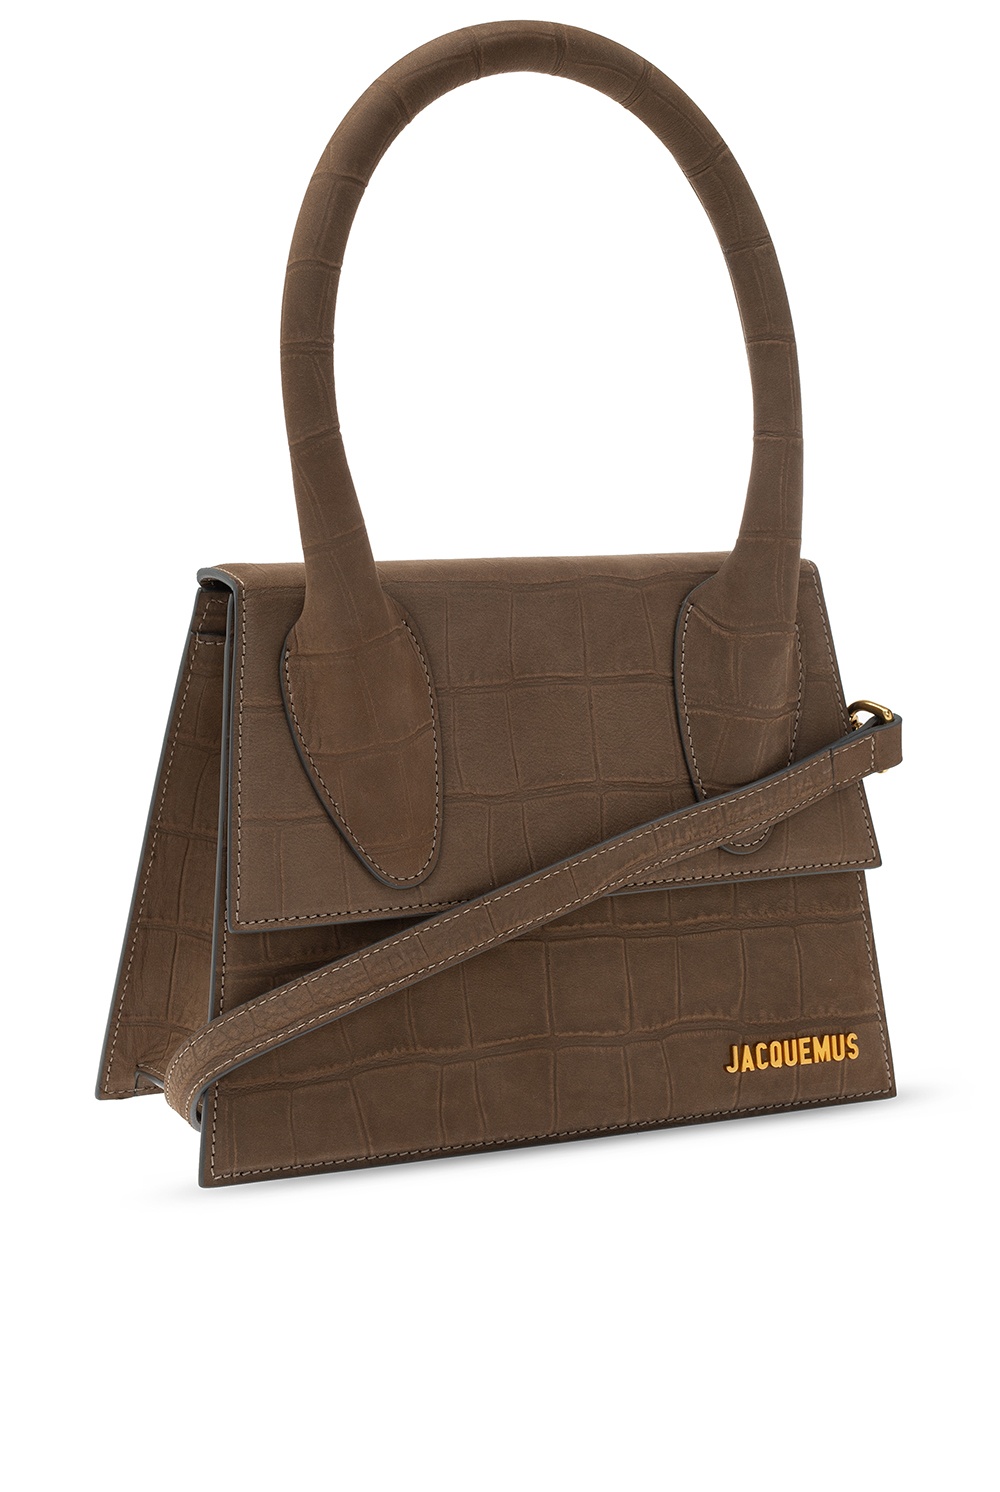 Jacquemus ‘Le Grand Chiquito’ shoulder bag | Women's Bags | Vitkac